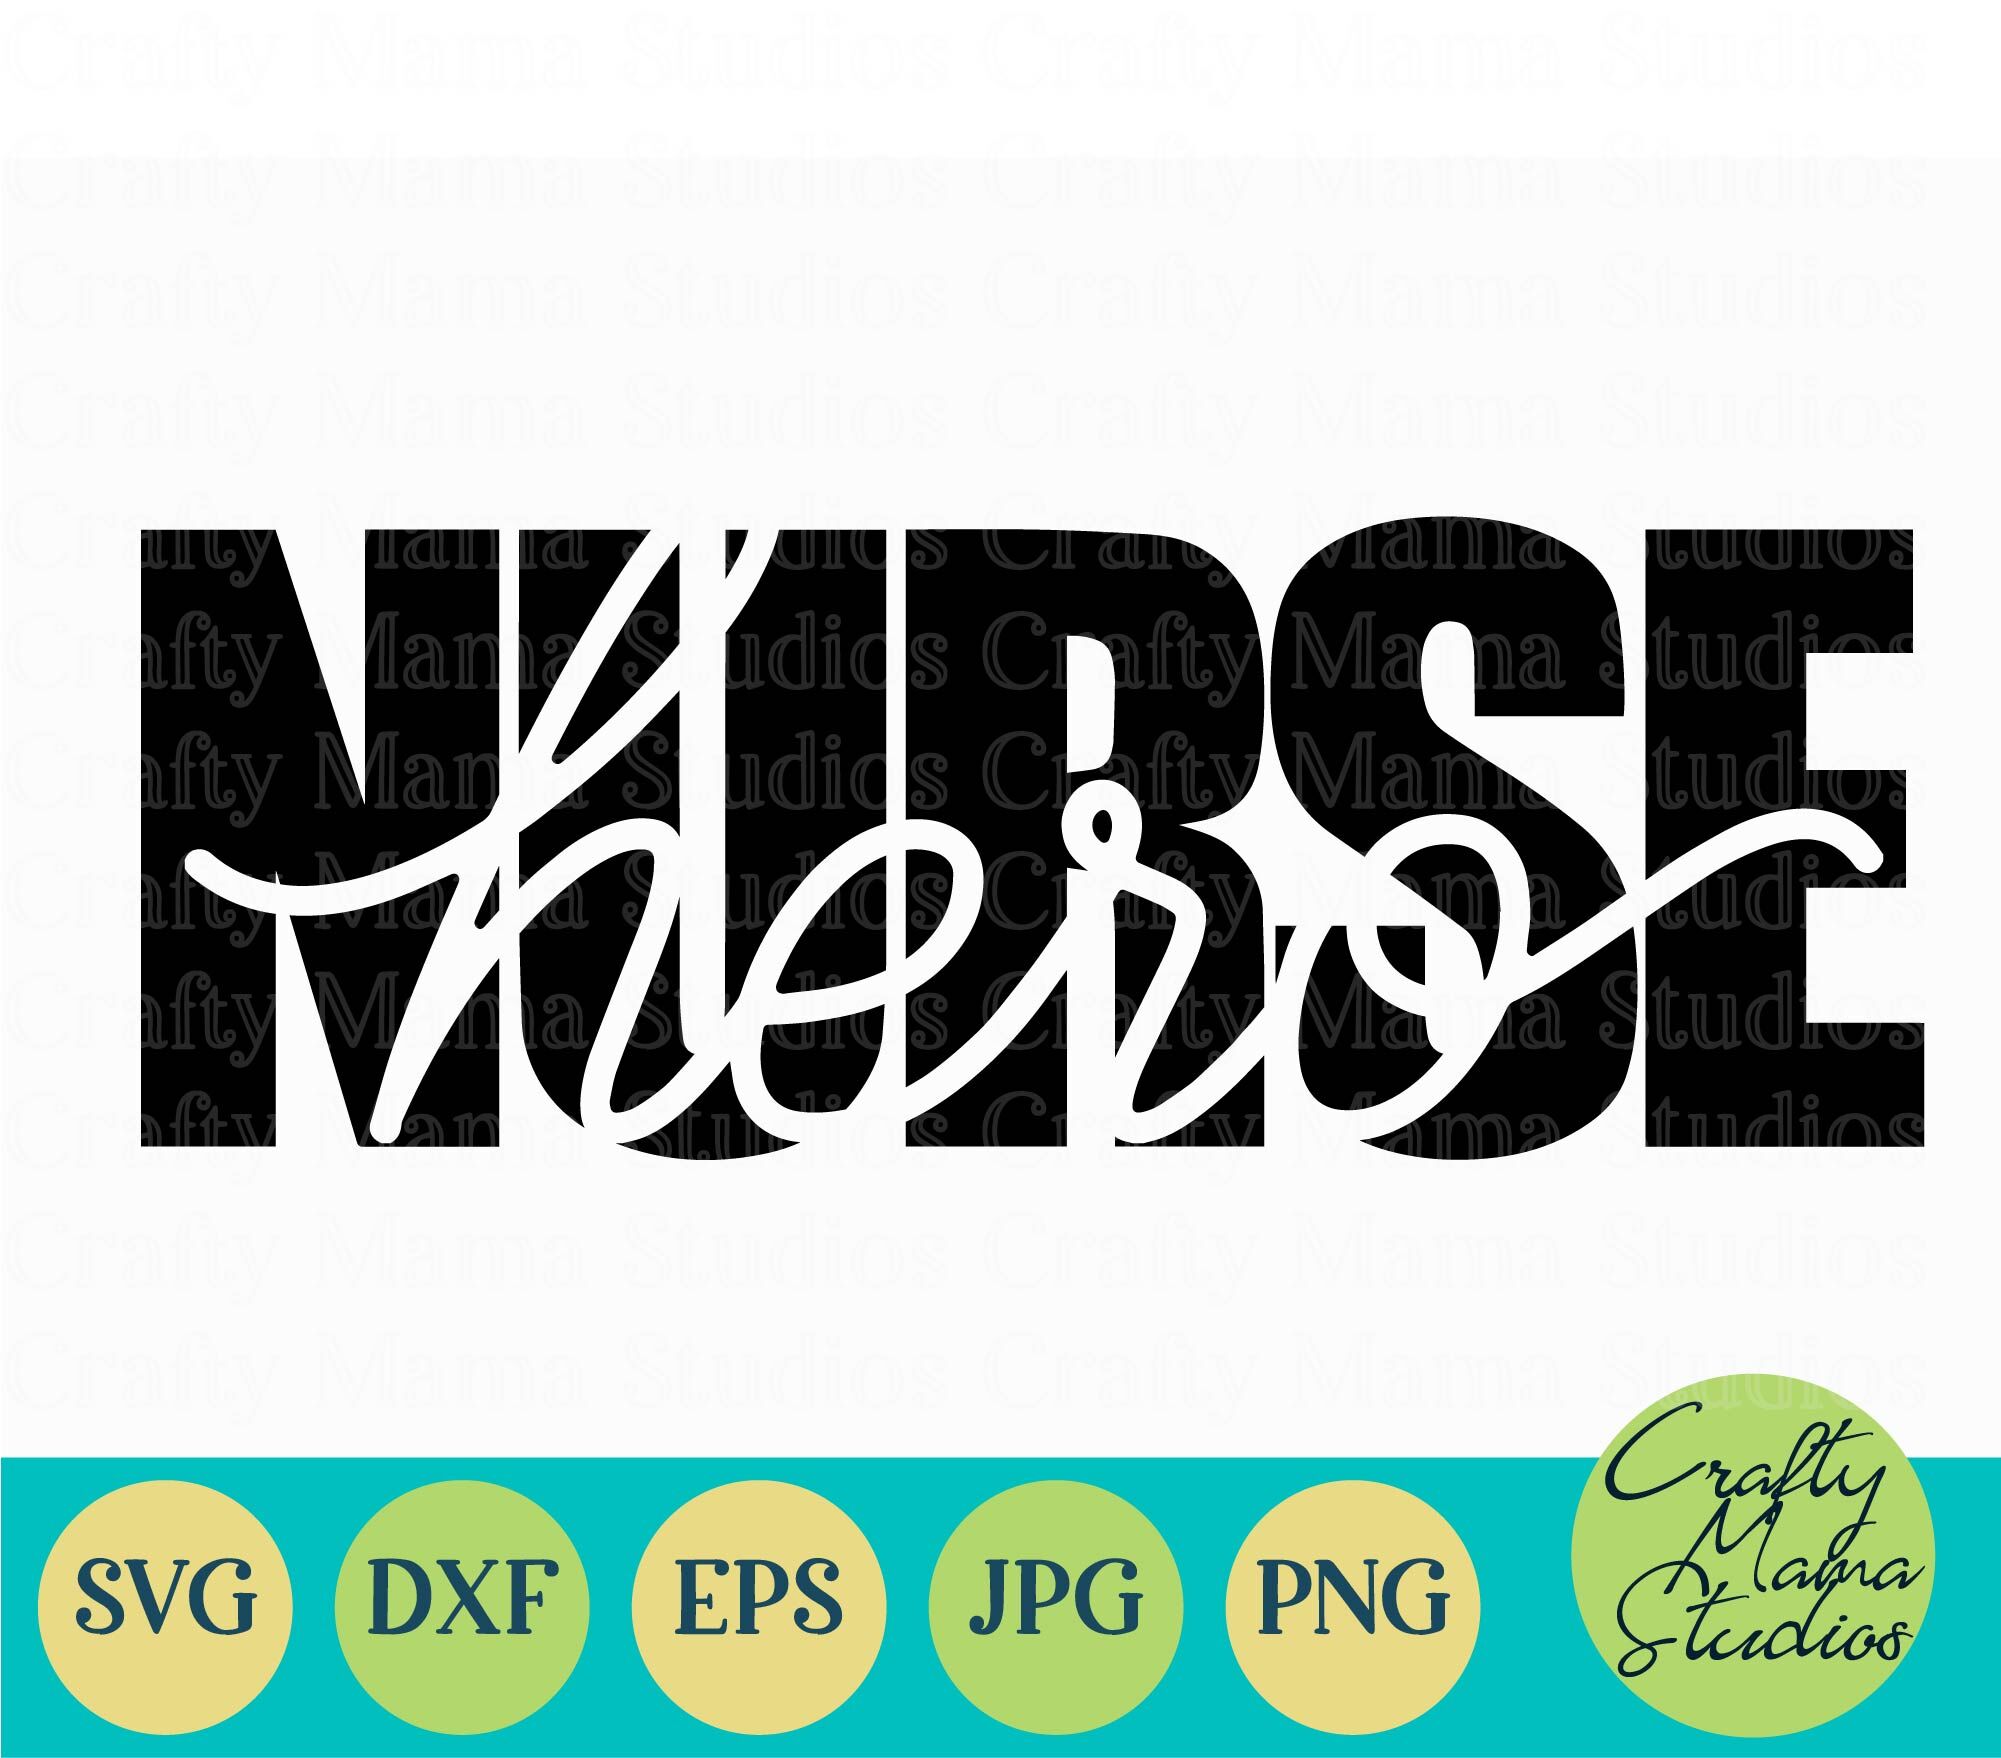 Nurse Svg Nursing Svg Nurse Shirt Svg Hero Svg By Crafty Mama Studios Thehungryjpeg Com